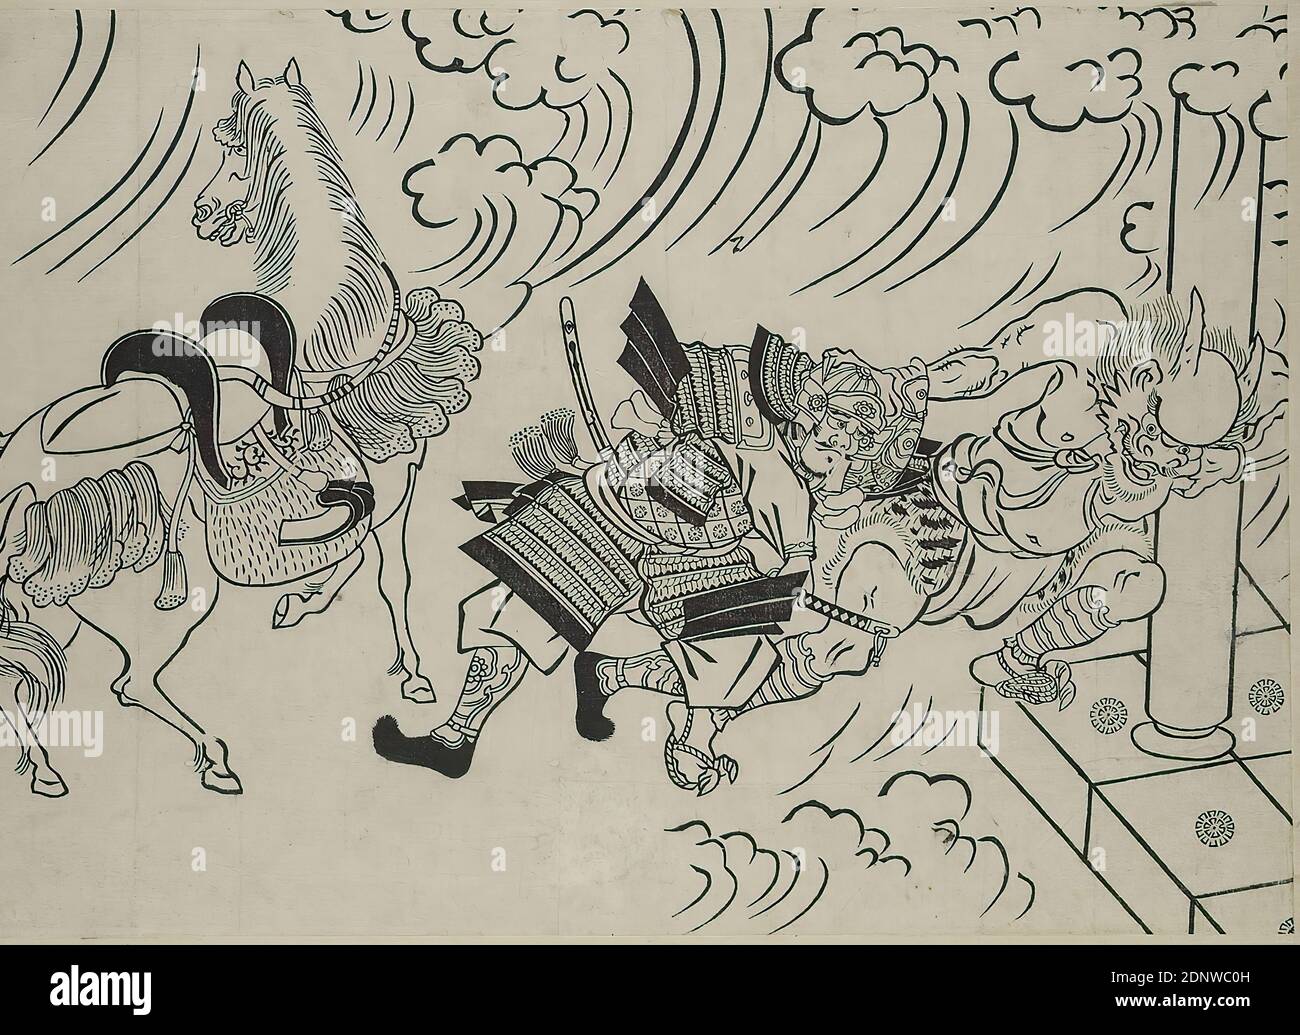 Hishikawa Moronobu, Shutendōji, piatto 2, legno, totale: Altezza: 27,00 cm; larghezza: 35,00 cm, non firmato, stampe, stampati, cavallo, guerra/militare, creatura mitica, mostro, figure leggendarie, periodo Edo Foto Stock